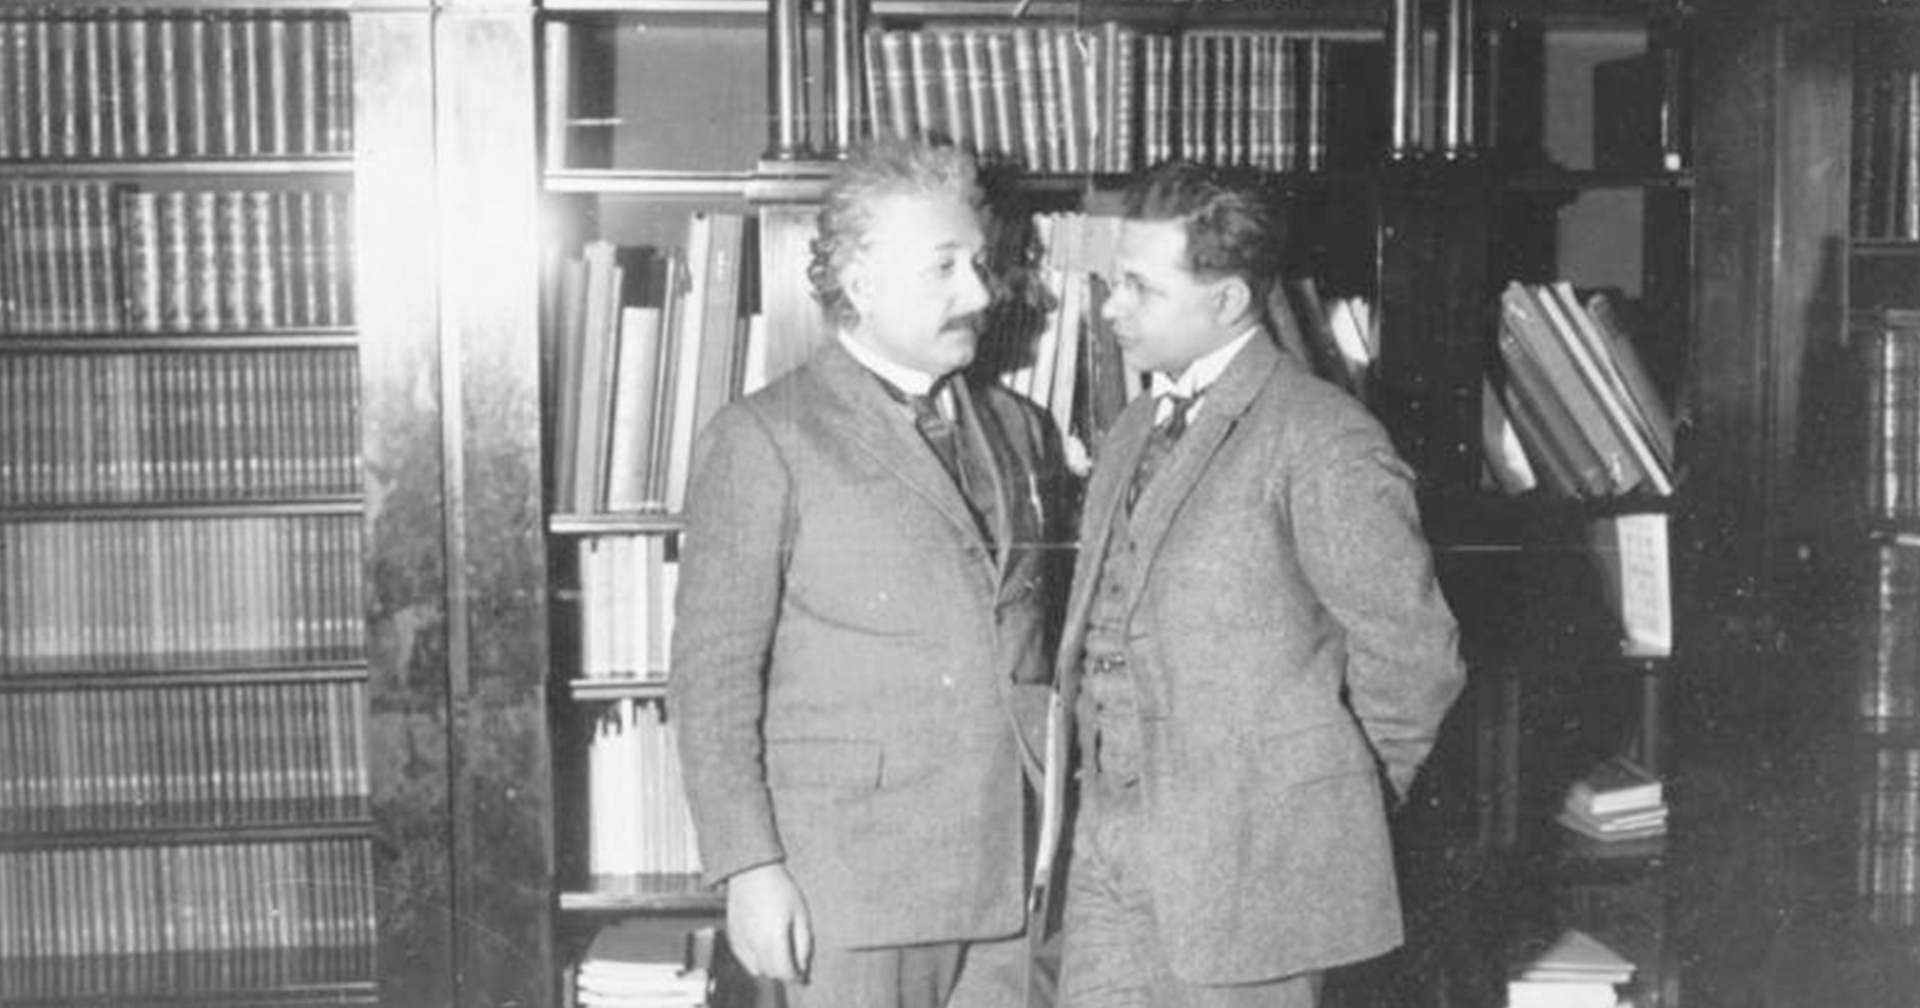 รู้จัก ‘ฮันส์ อัลเบิร์ต ไอน์สไตน์’ ทายาทสายตรงไอน์สไตน์ตัวจริง กับชีวิตที่พ่อไม่เคยปลื้ม